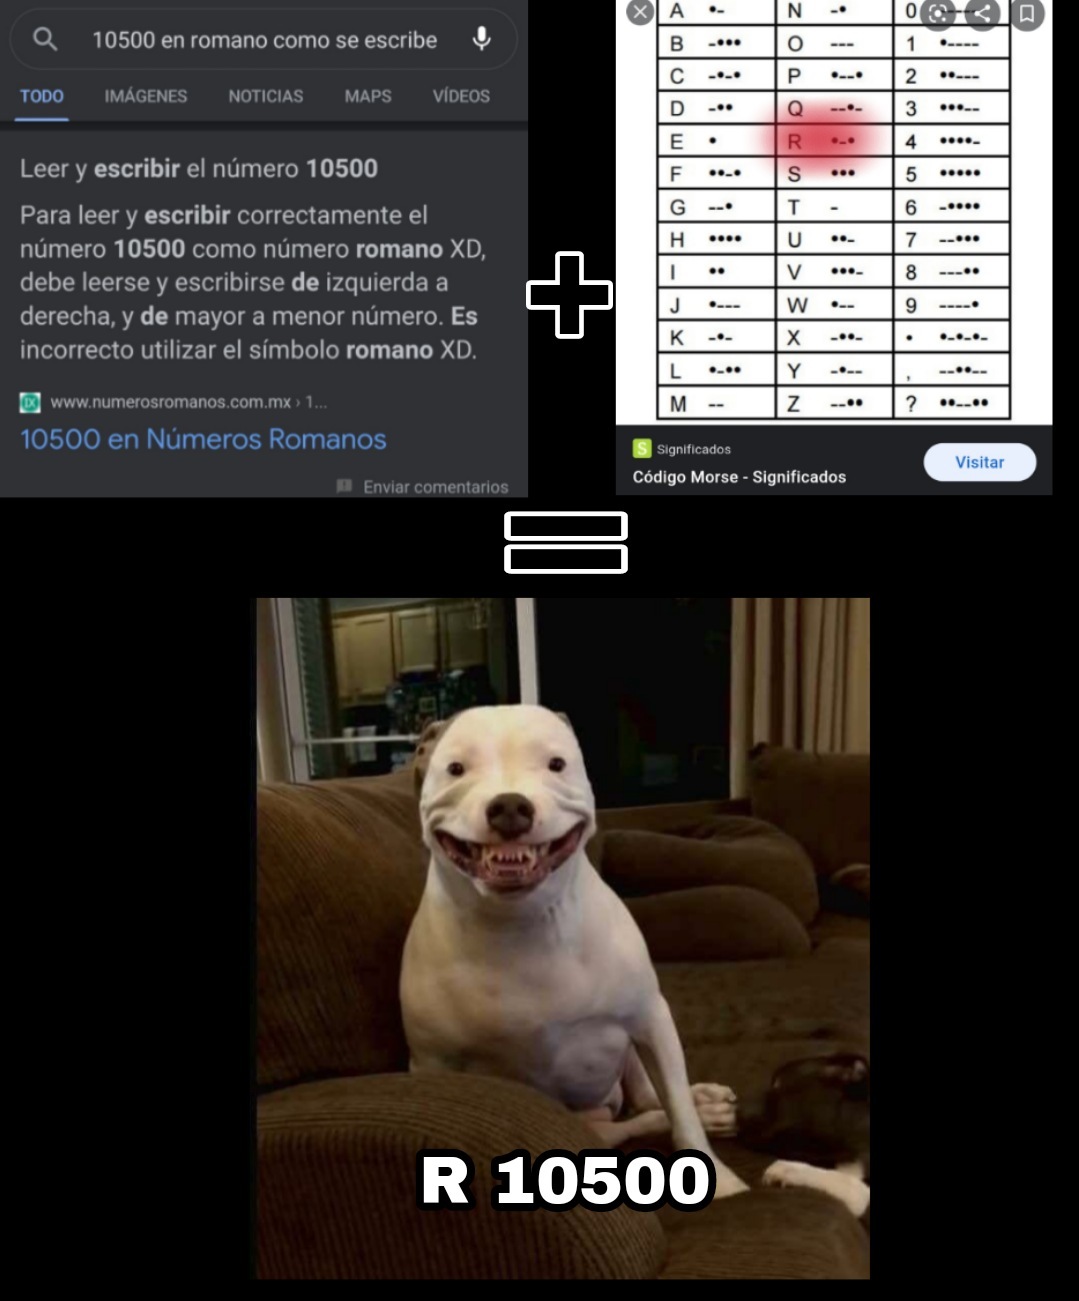 R 10500 - meme